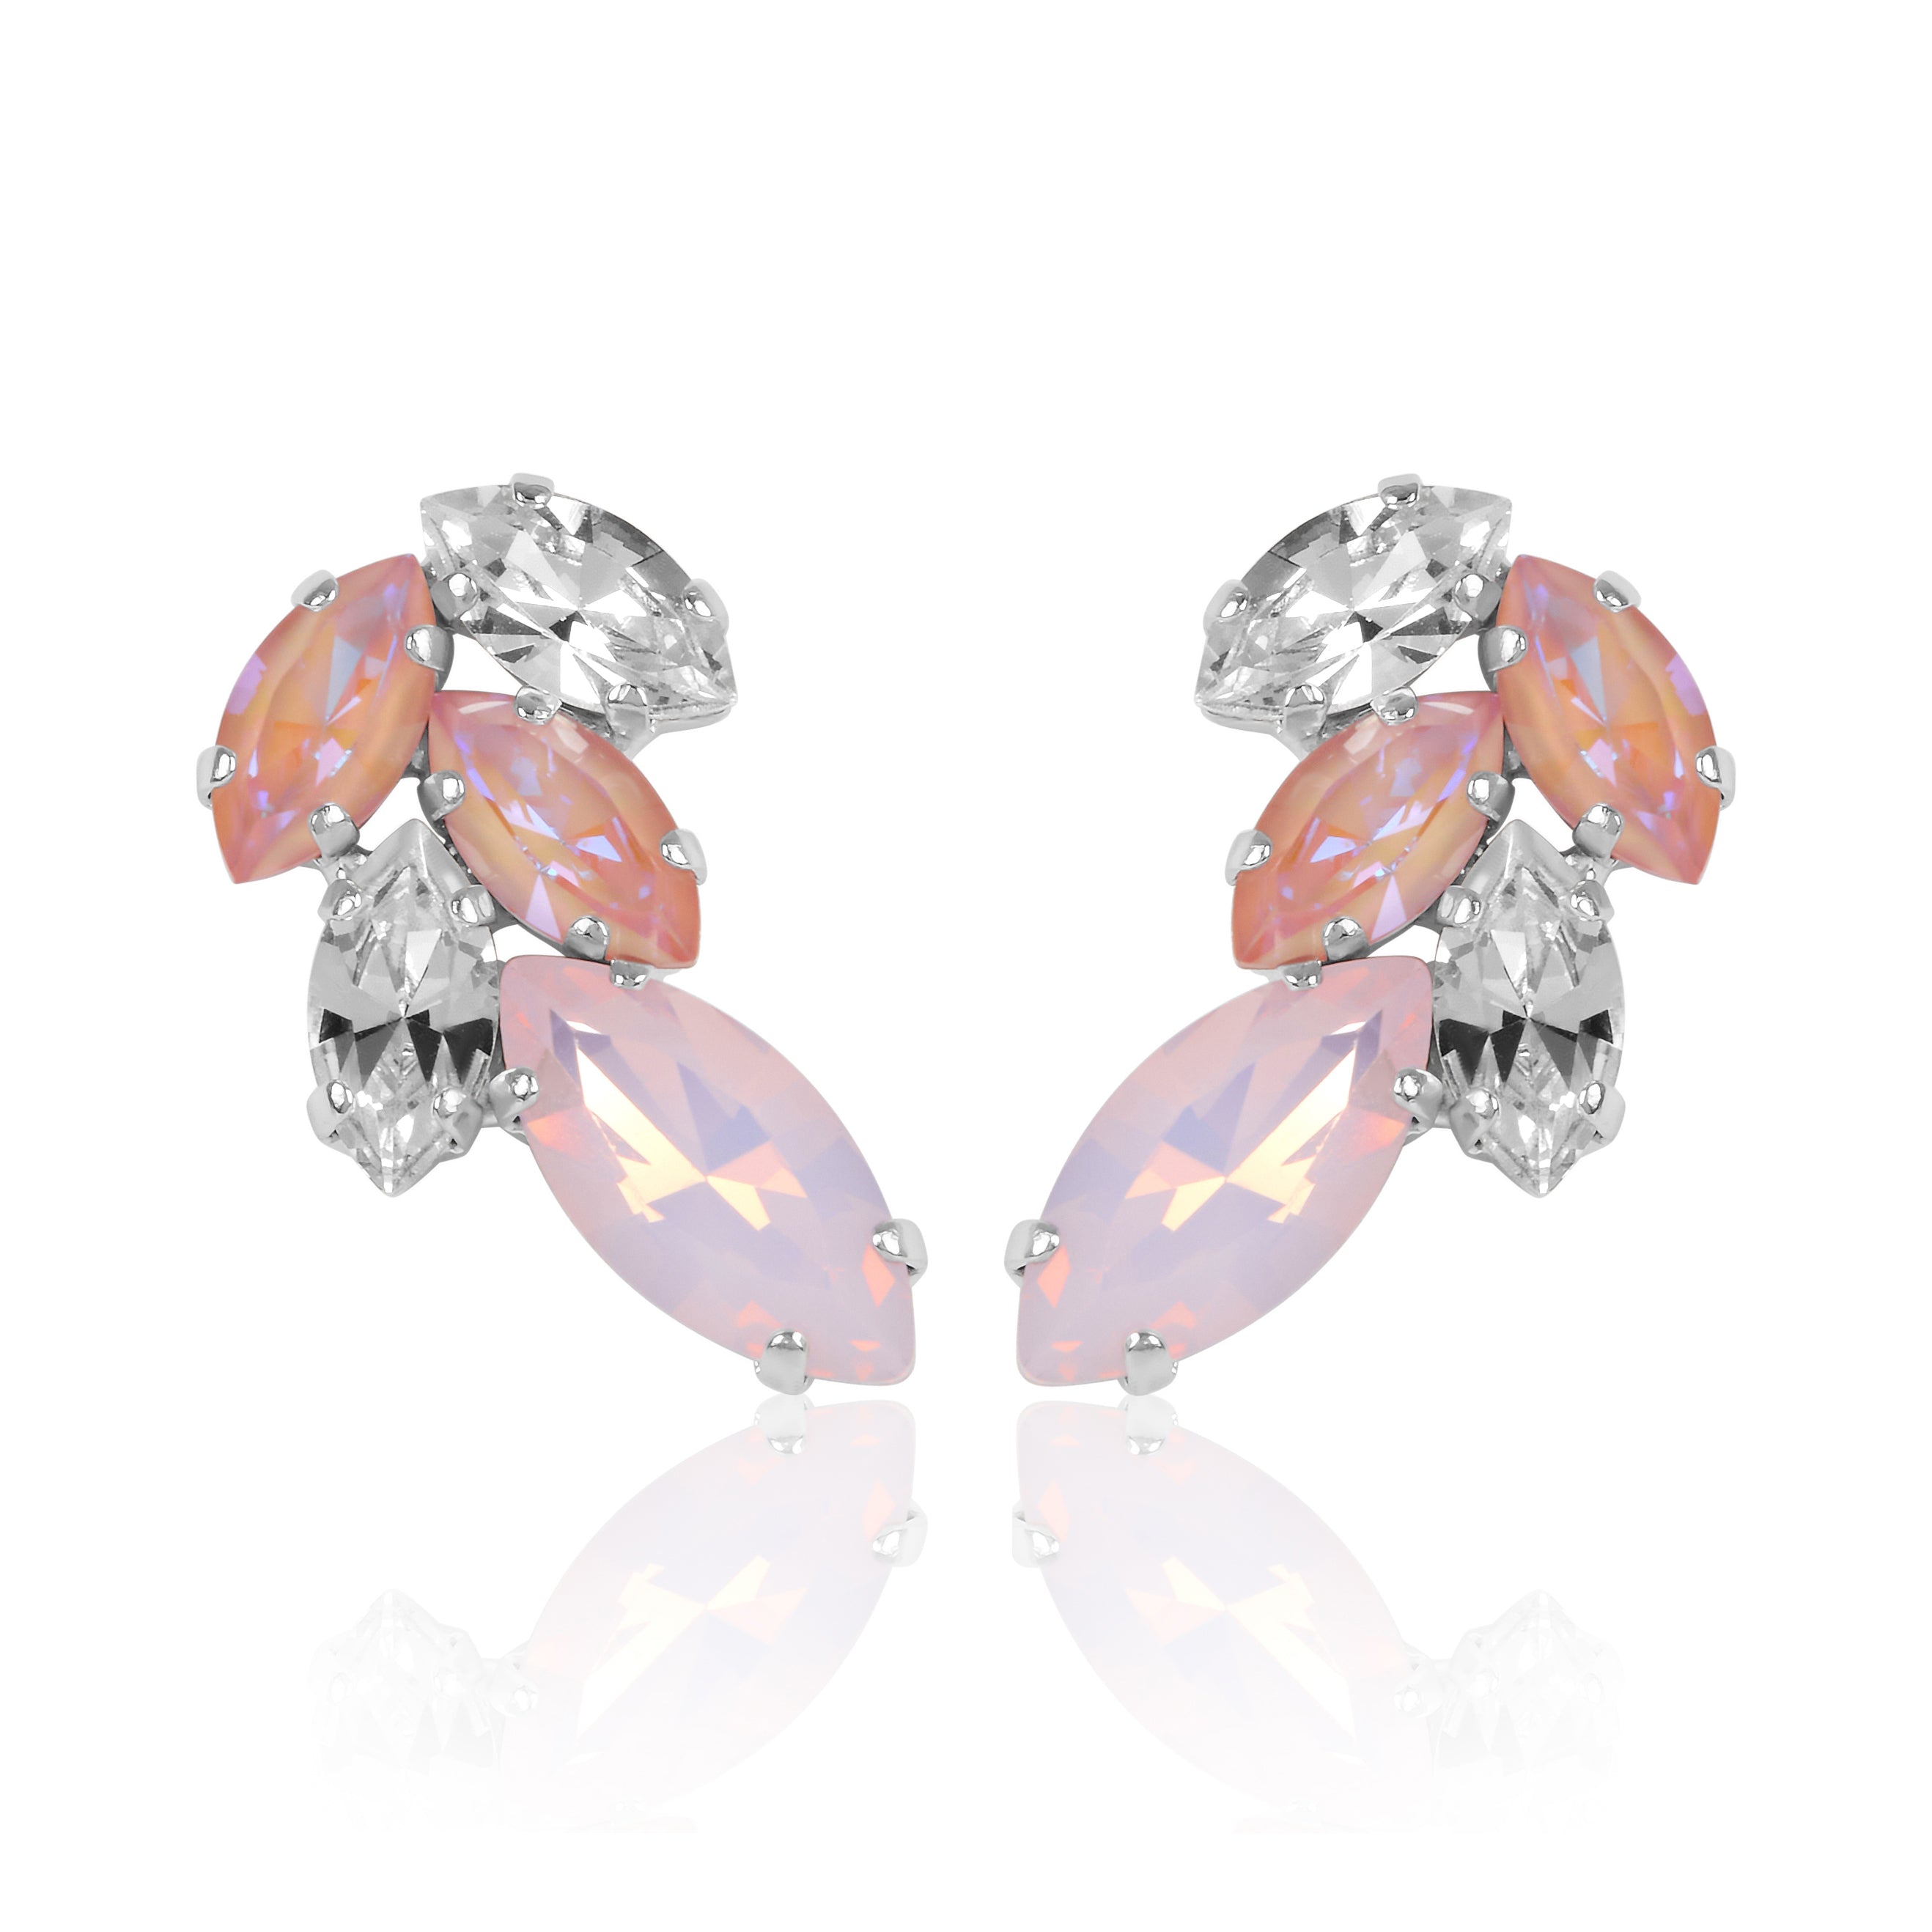 Cluster Earrings, Silver Earrings, Statement Earrings, Wedding Earrings, Going Out Earrings, Swarovski Earrings, Pink Earrings, Opal Earrings, Rose Water Opal Earrings